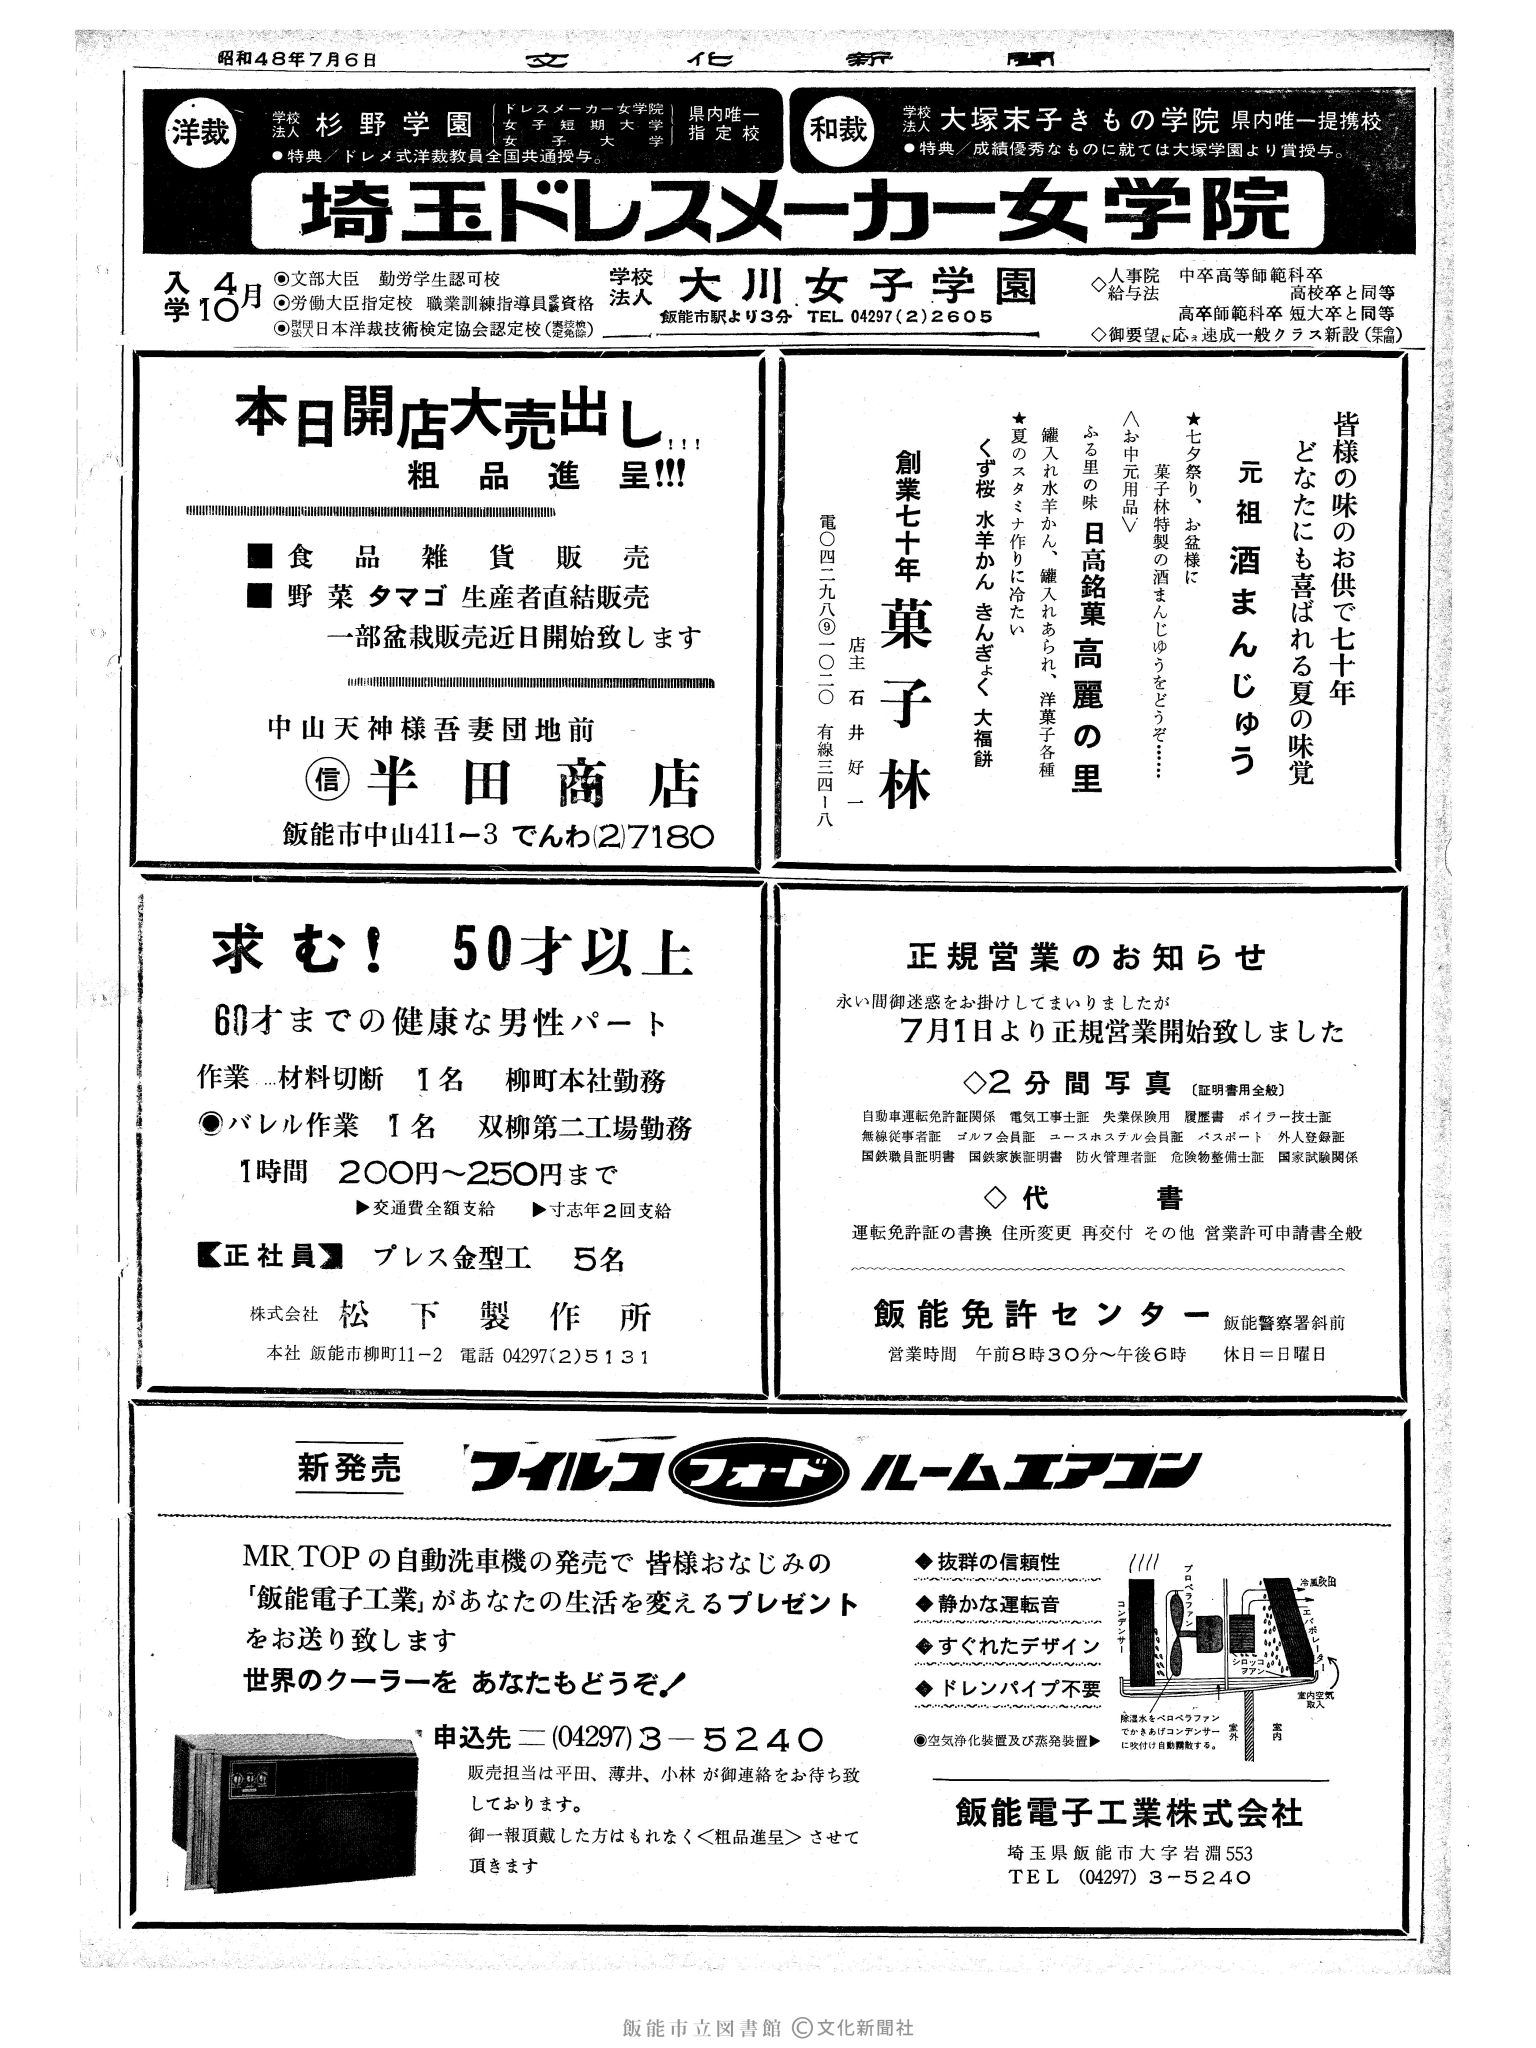 昭和48年7月6日2面 (第7575号) 広告ページ